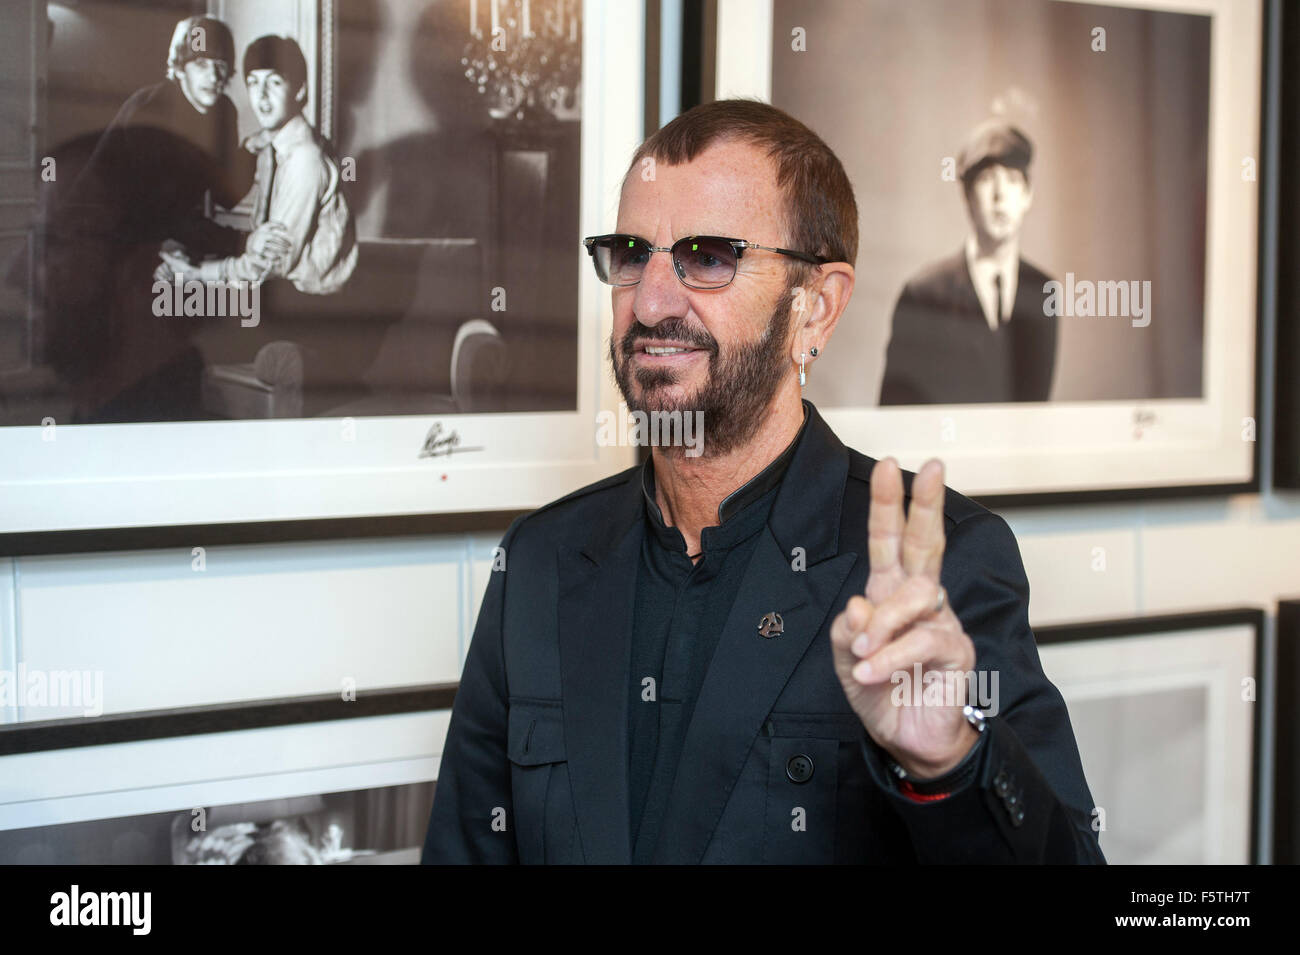 Ringo Starr apre un display delle sue fotografie charting la sua infanzia, i Beatles e oltre, alla National Portrait Gallery. Dotato di: Ringo Starr dove: Londra, Regno Unito quando: 09 Set 2015 Foto Stock